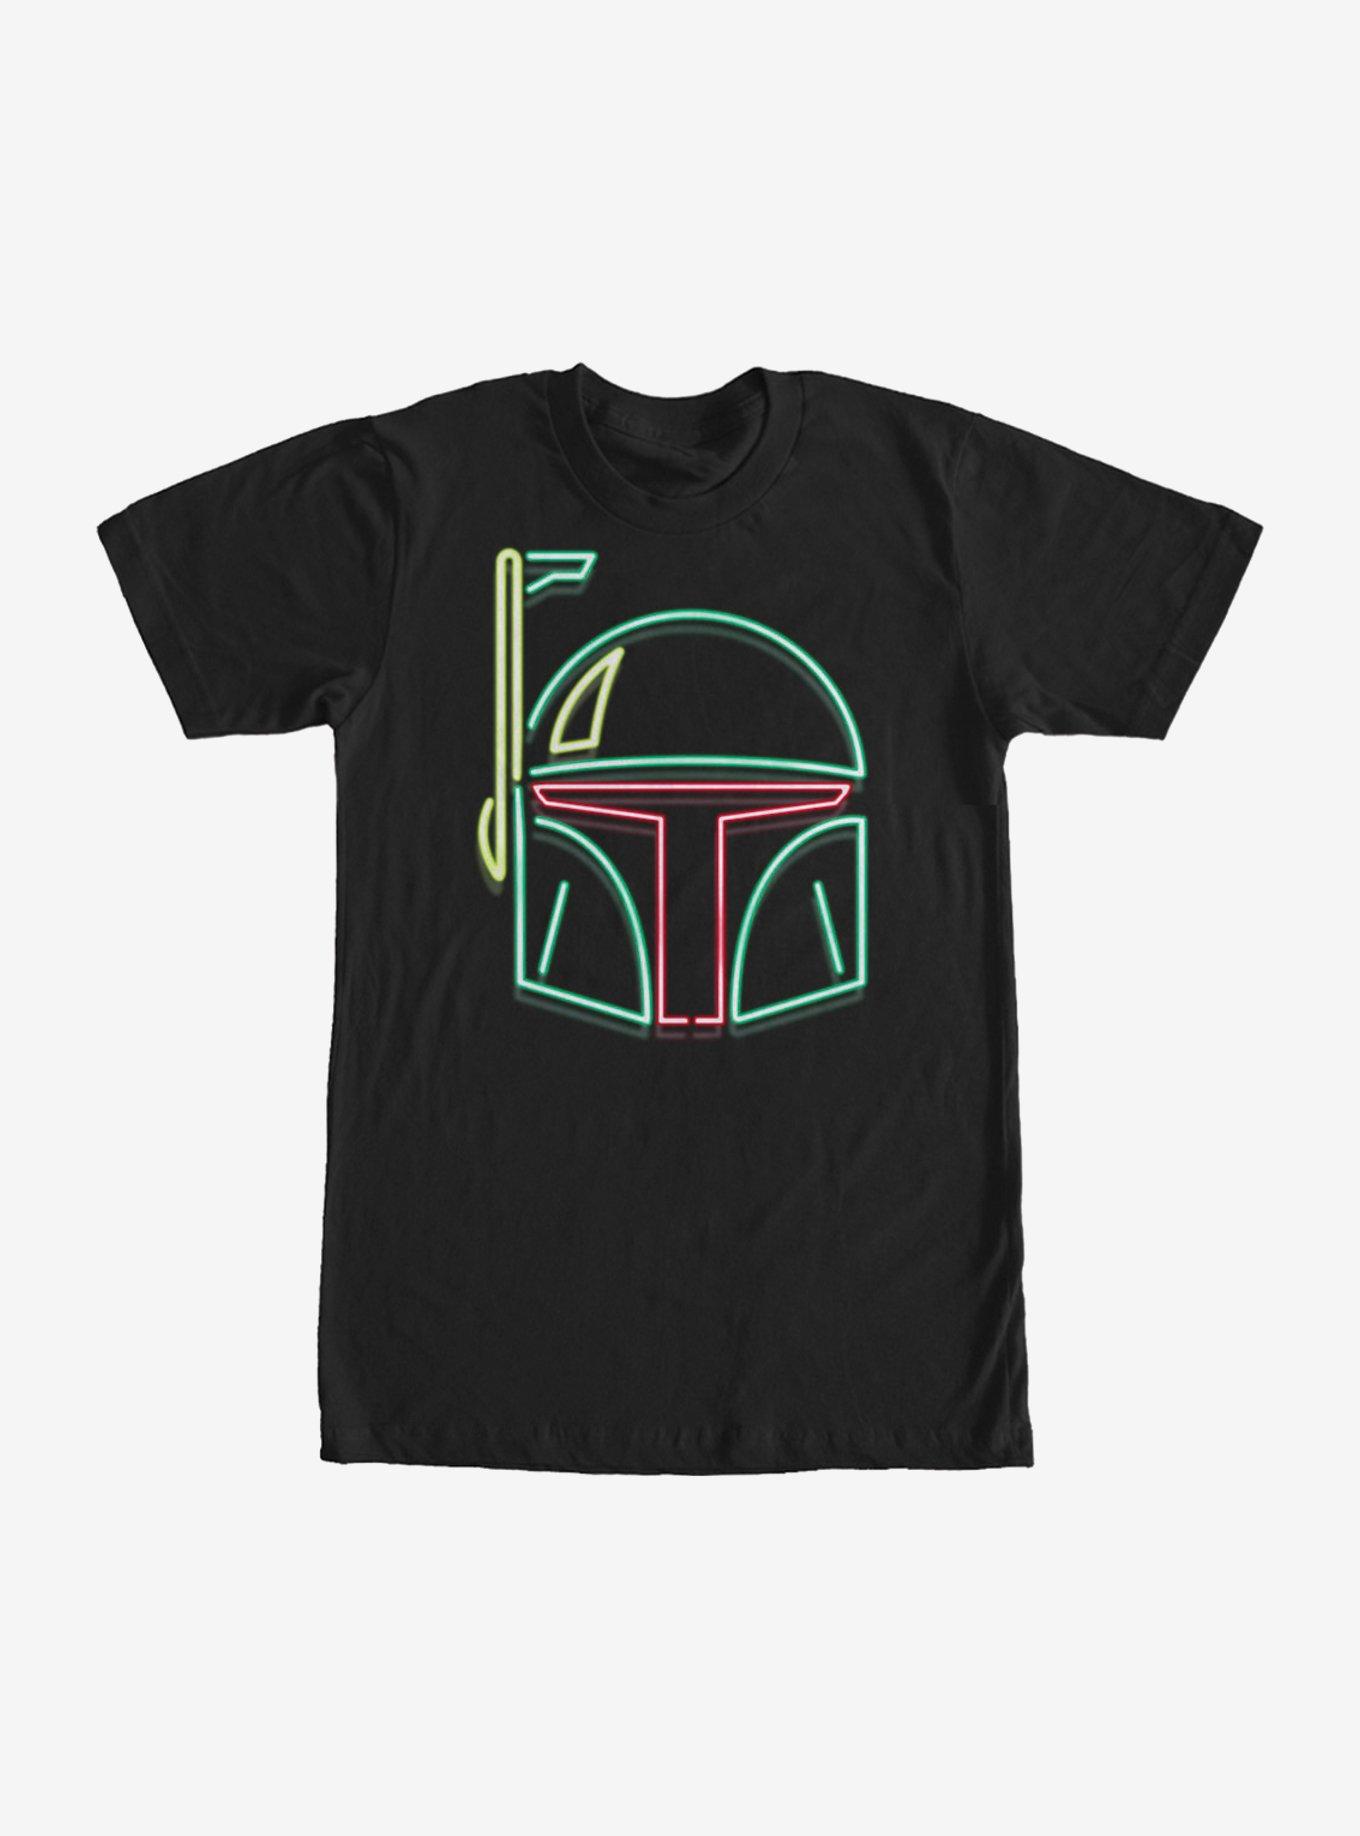 Star Wars Boba Fett Neon Sign Helmet T-Shirt